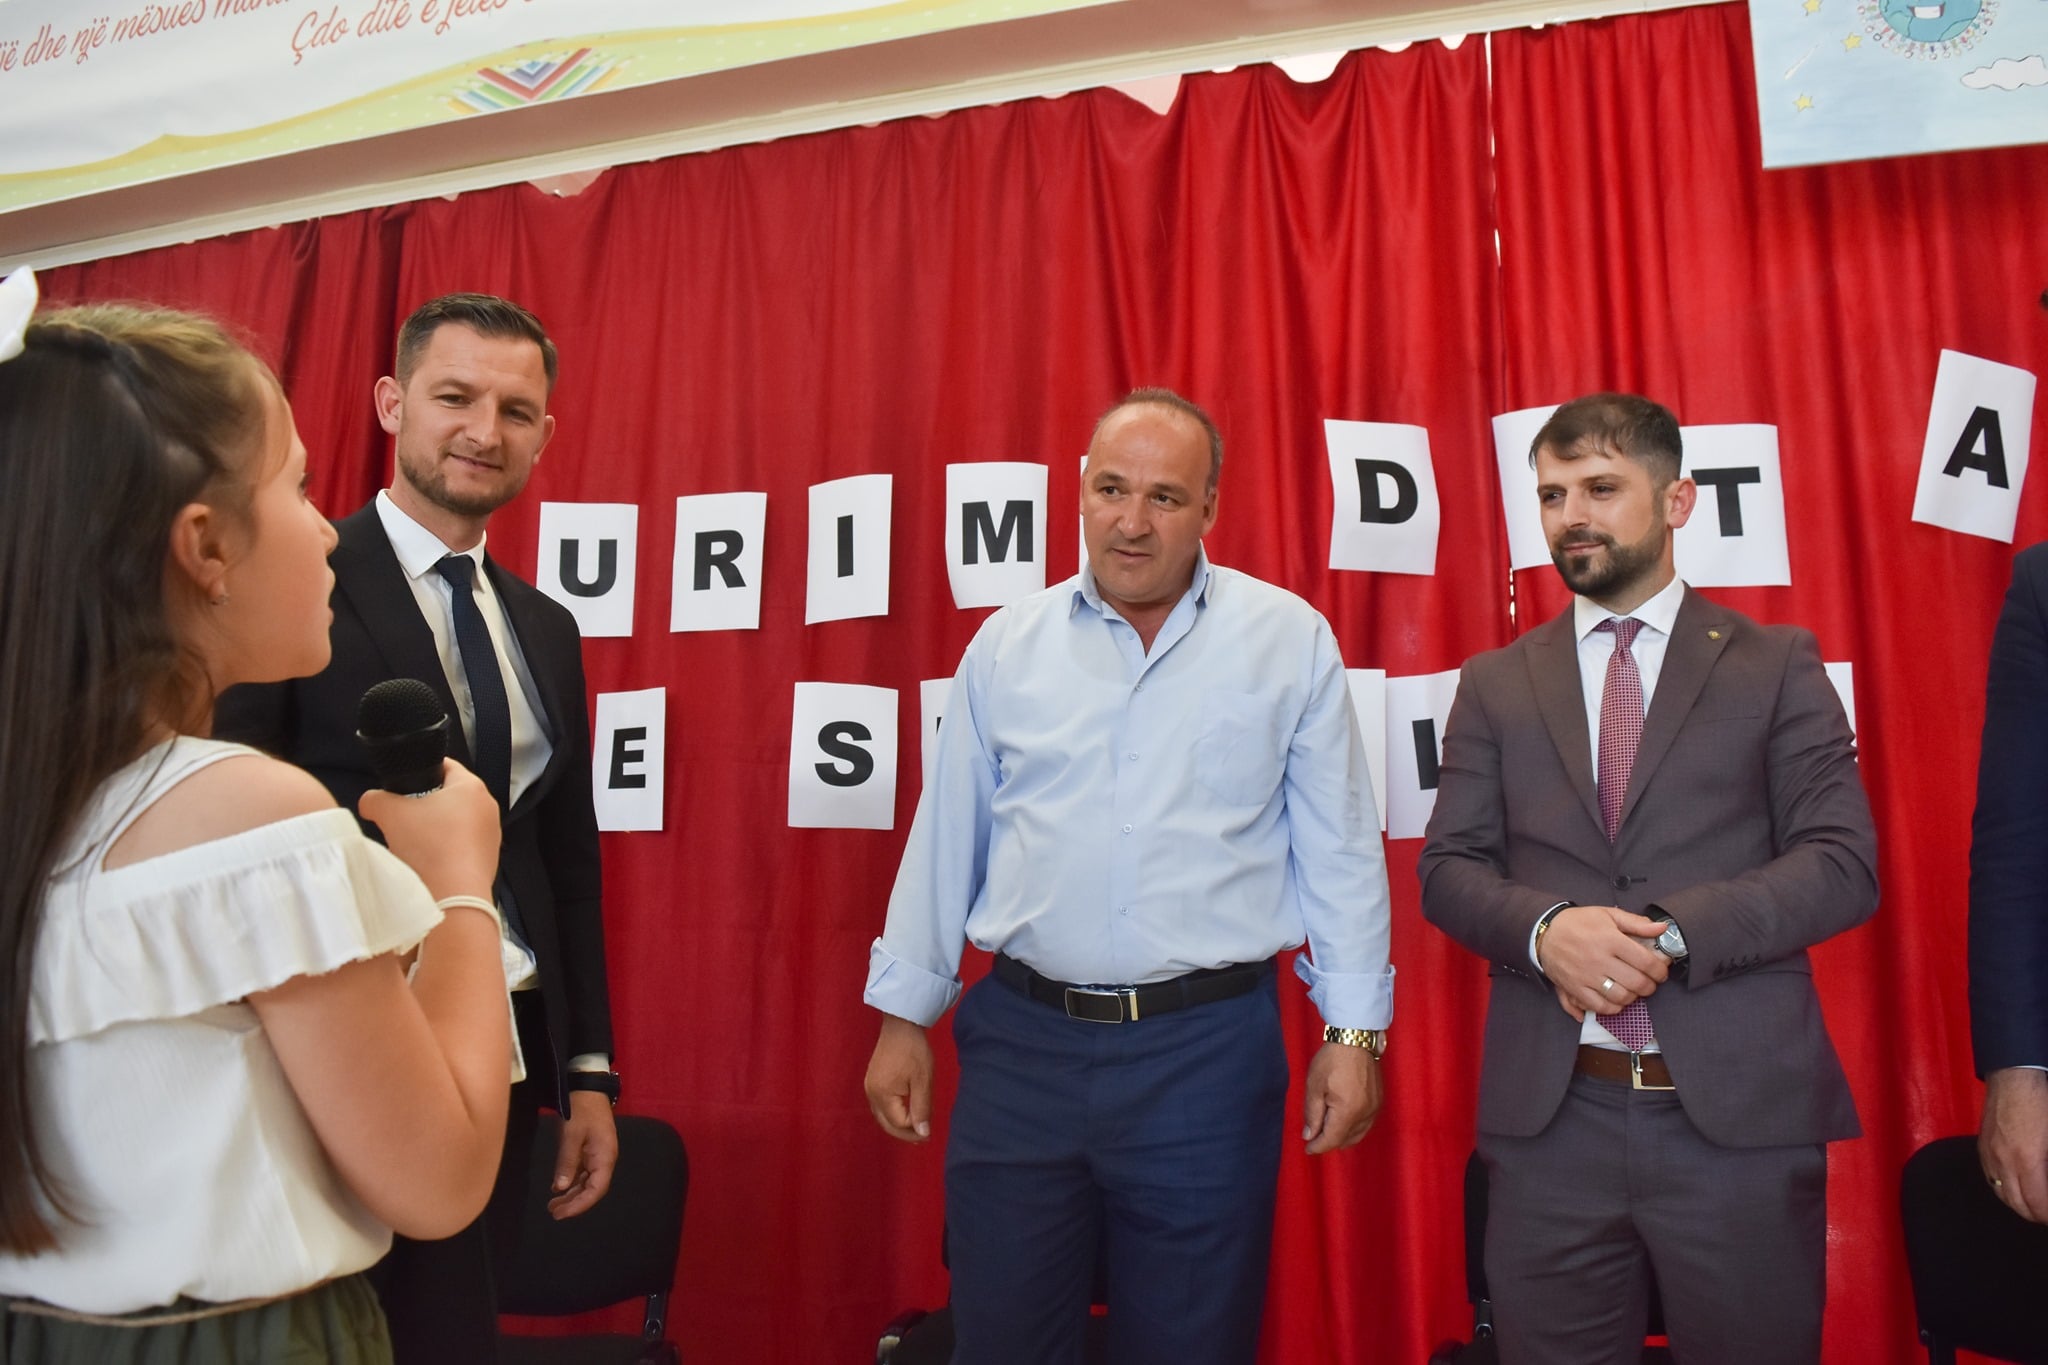  Podujevë: Shënohet Dita e Shkollës “Naim Frashëri”, merr pjesë edhe kryetari i komunës